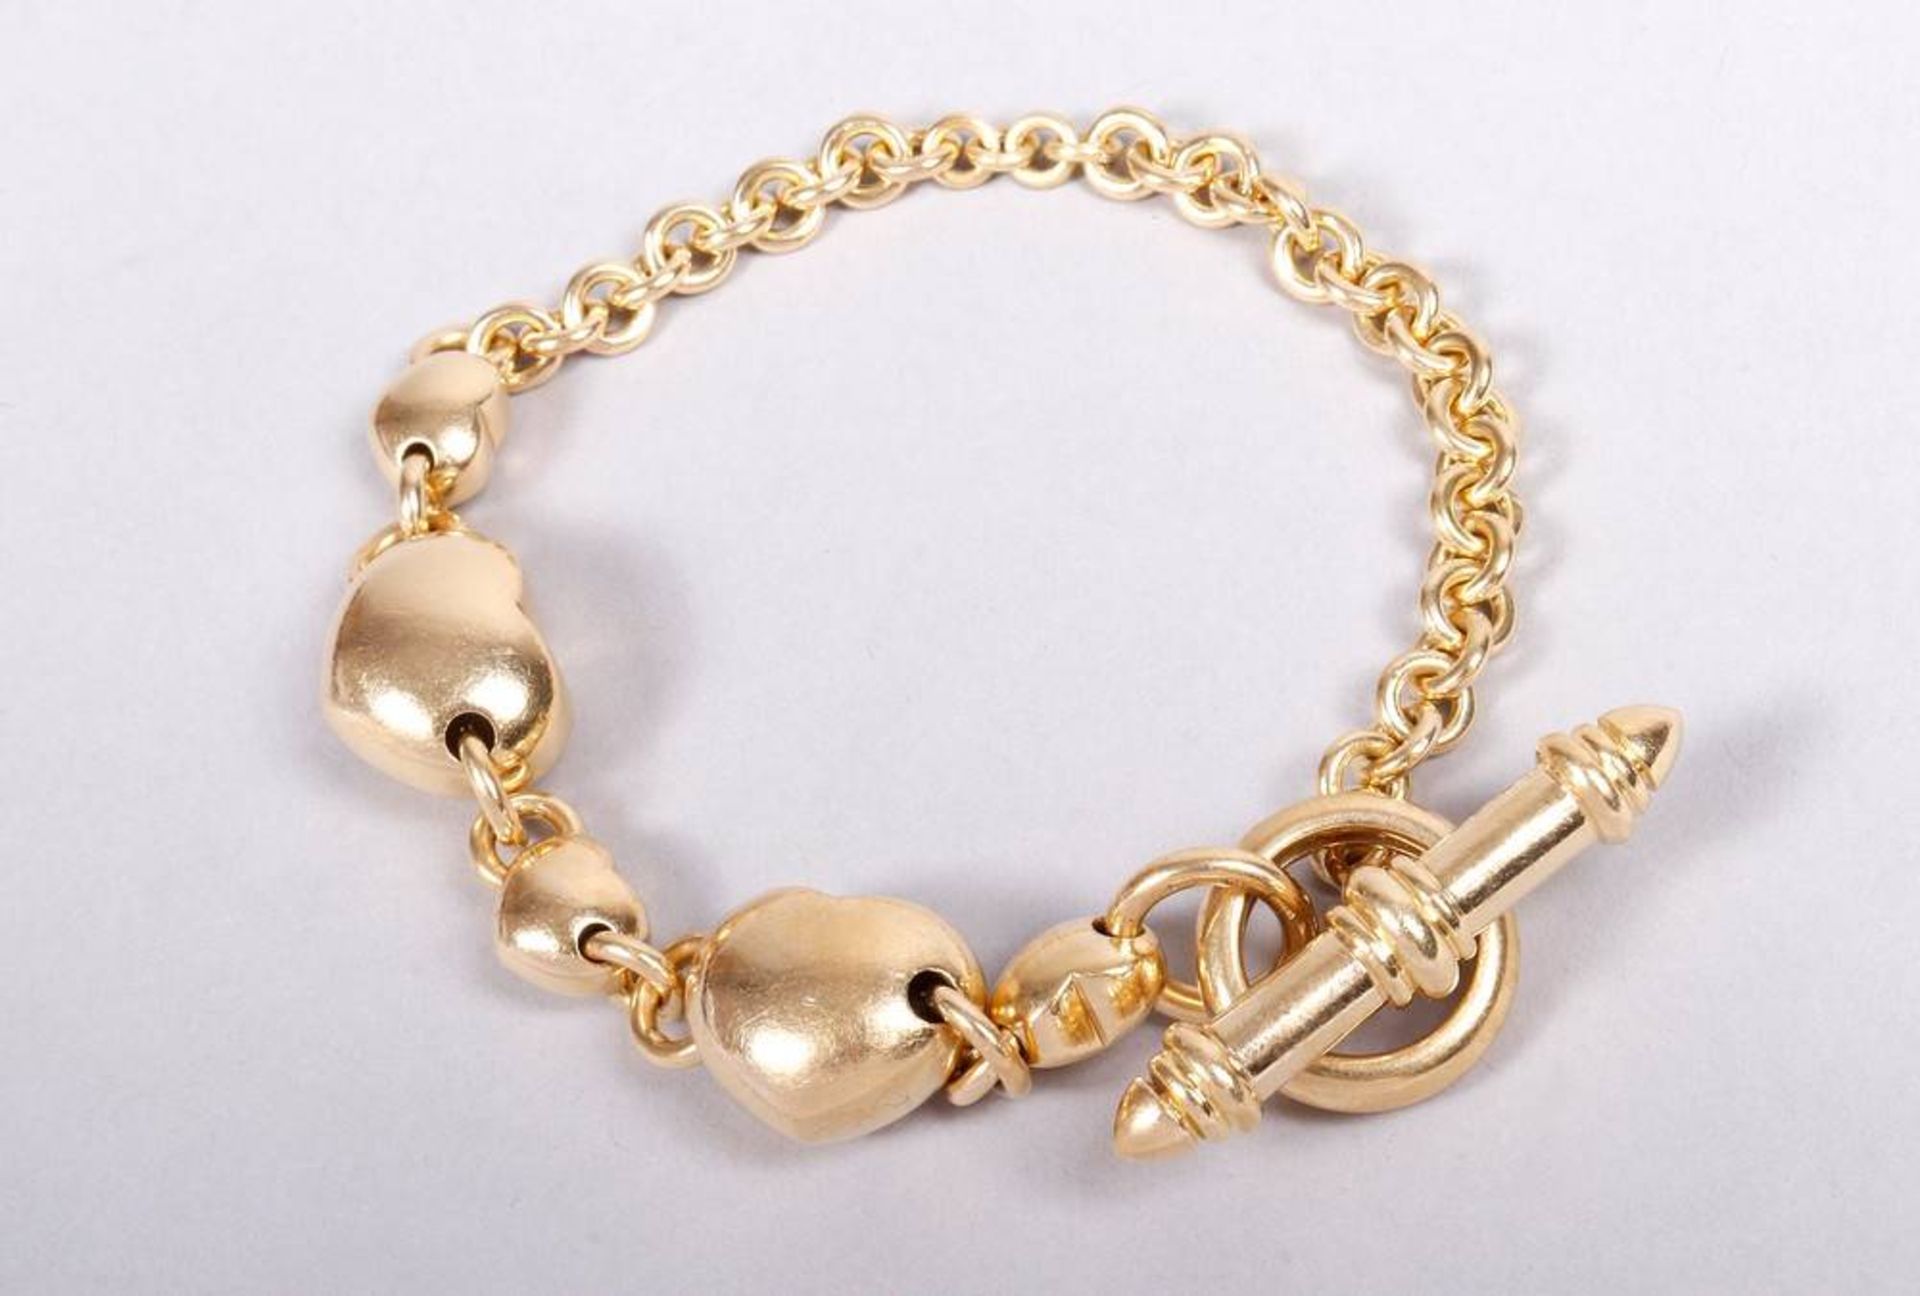 Solid gold bracelet, 750 gold, manufacturer Leopatra